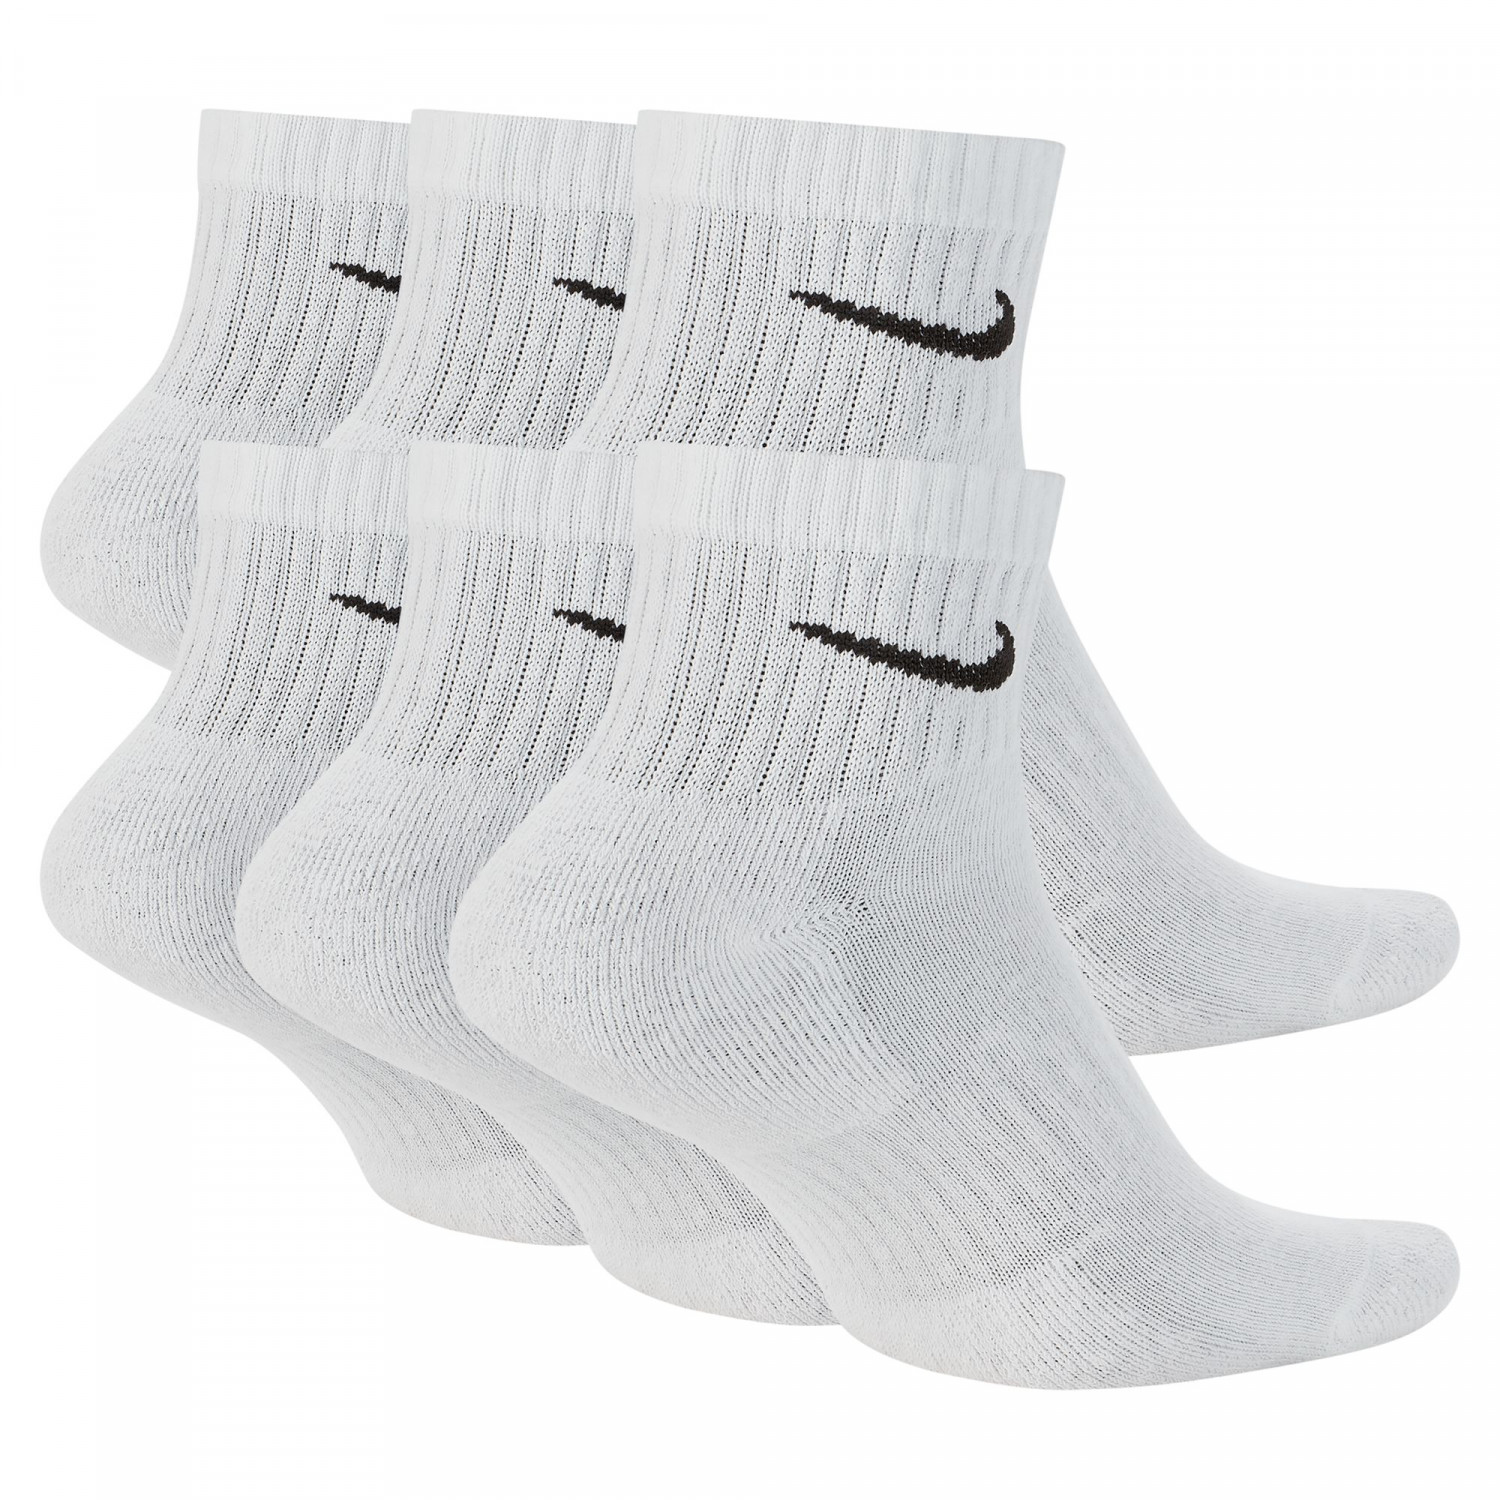 Lot 6 paires chaussettes entraînement Nike Everyday blanc noir sur